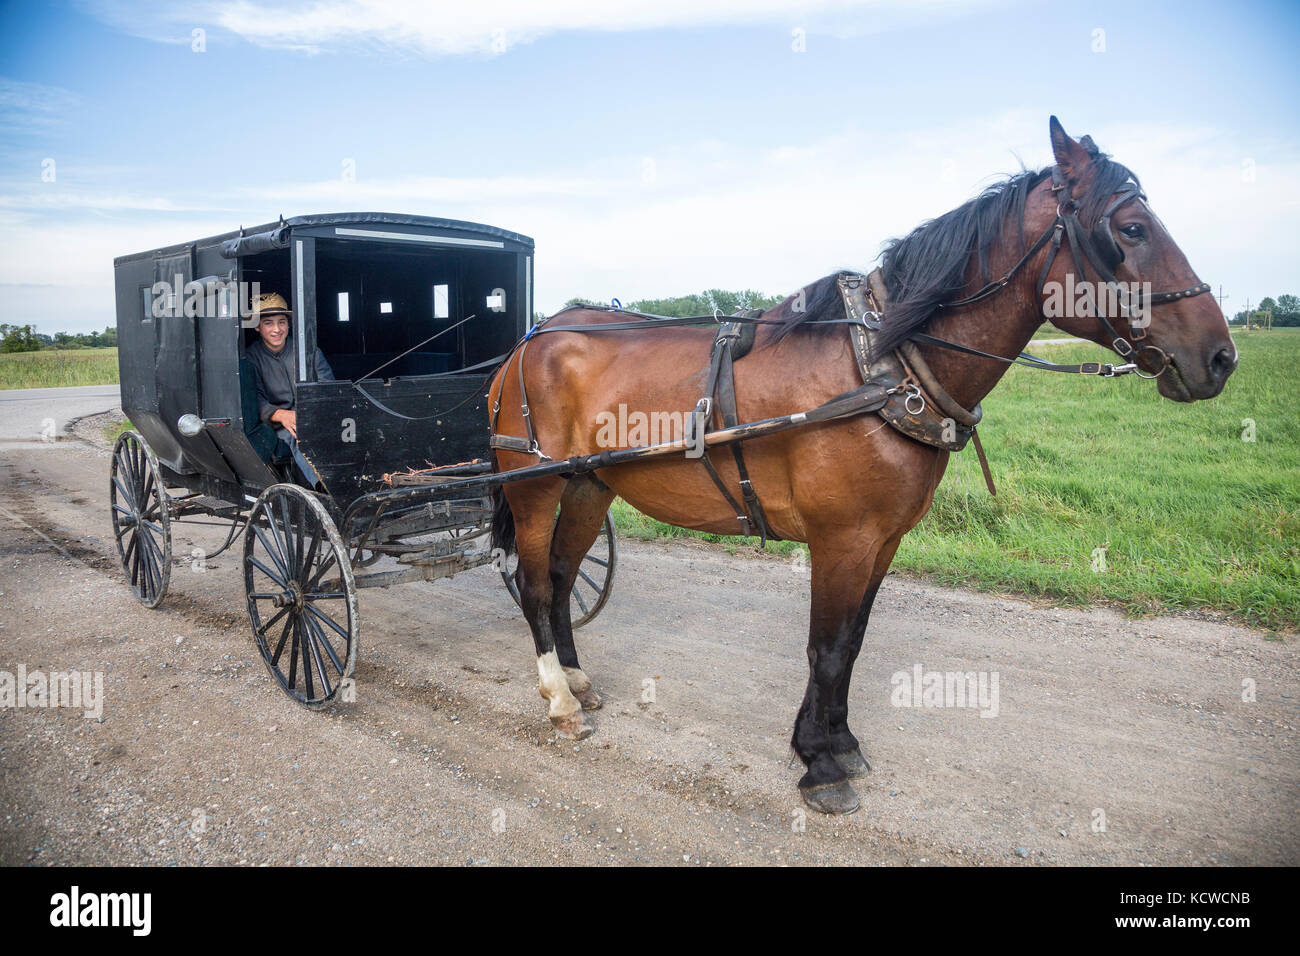 Lad amish e cavallo buggy, minnesota, Stati Uniti d'America Foto Stock